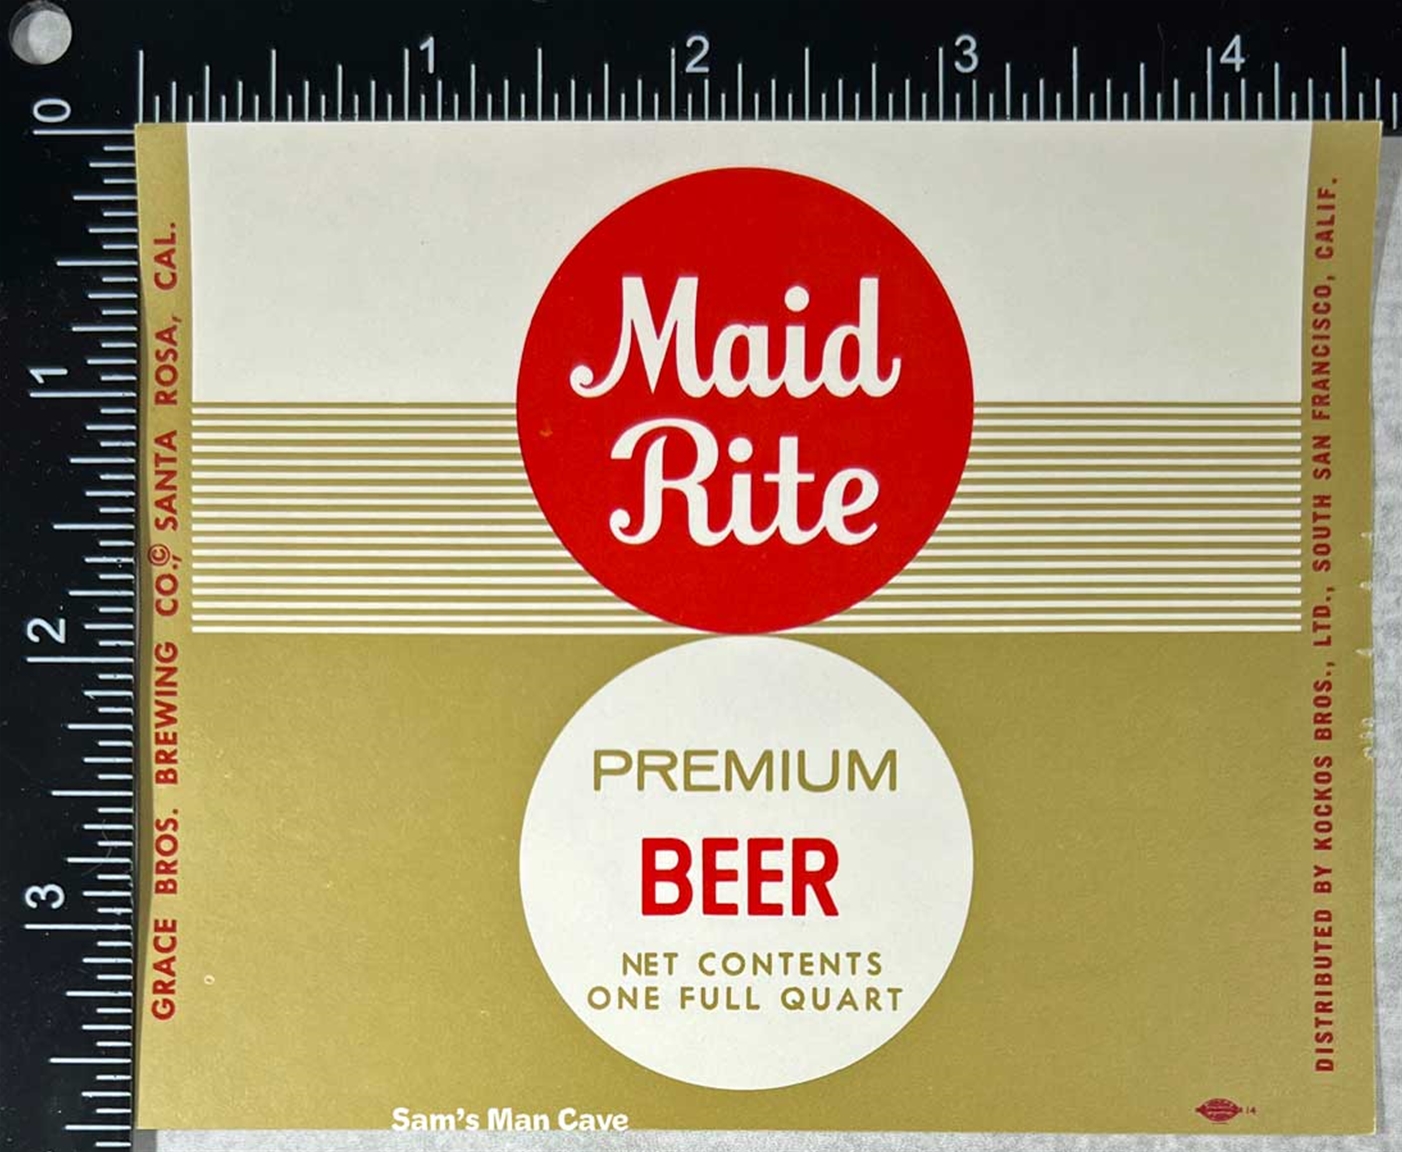 Maid Rite Premium Beer Label